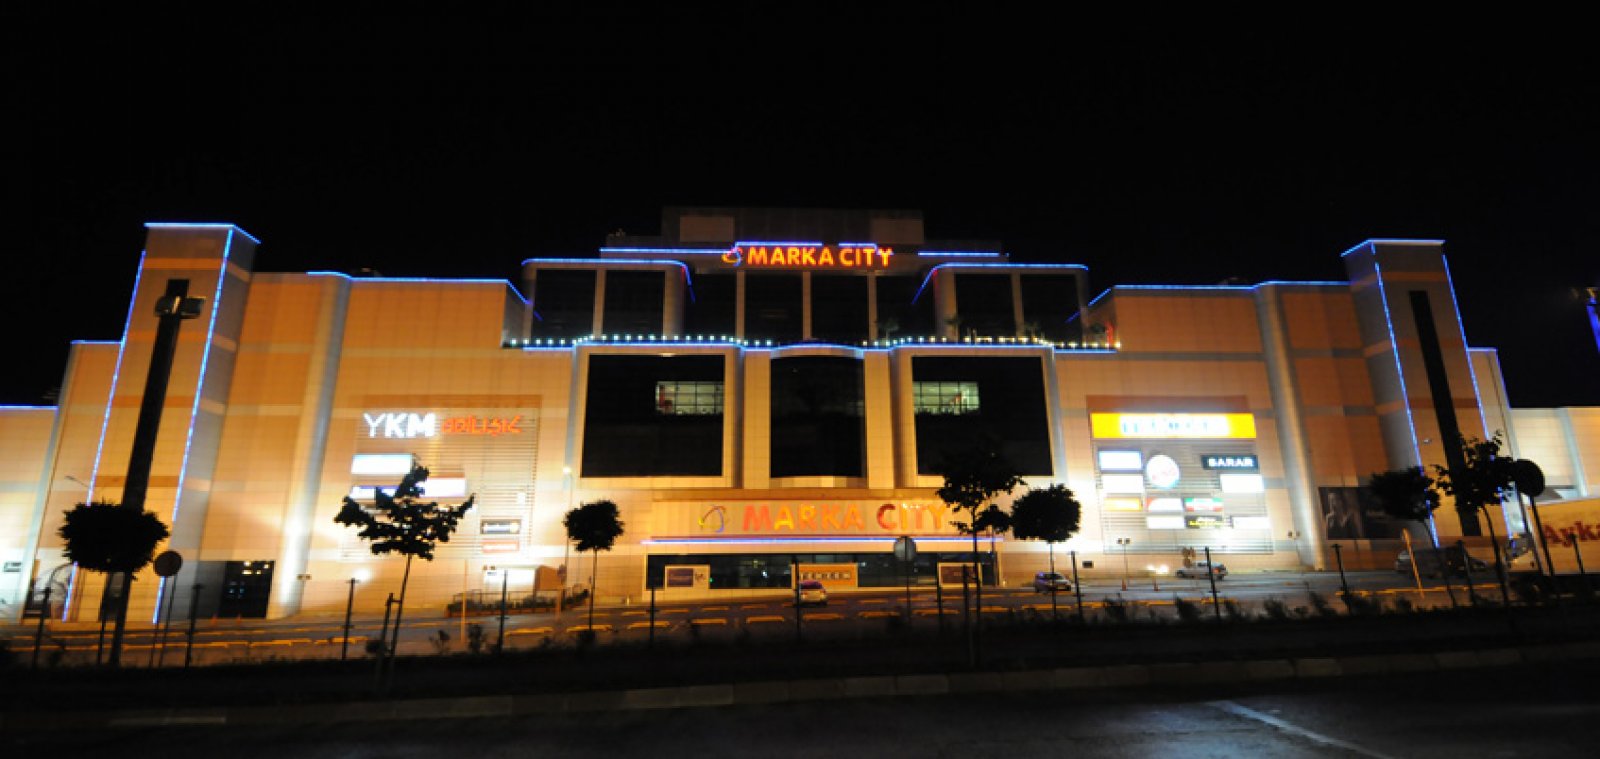 Markacity Mall